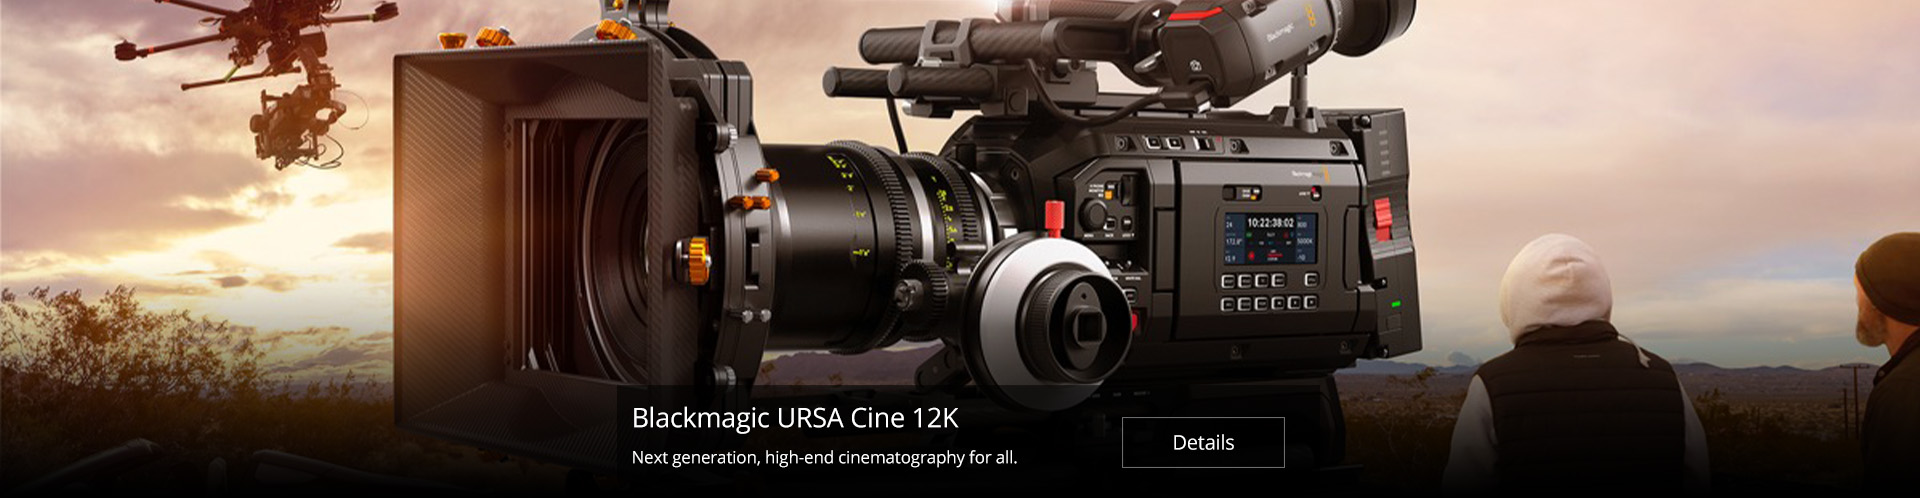 Blackmagic URSA Cine 12K LF cinema camera